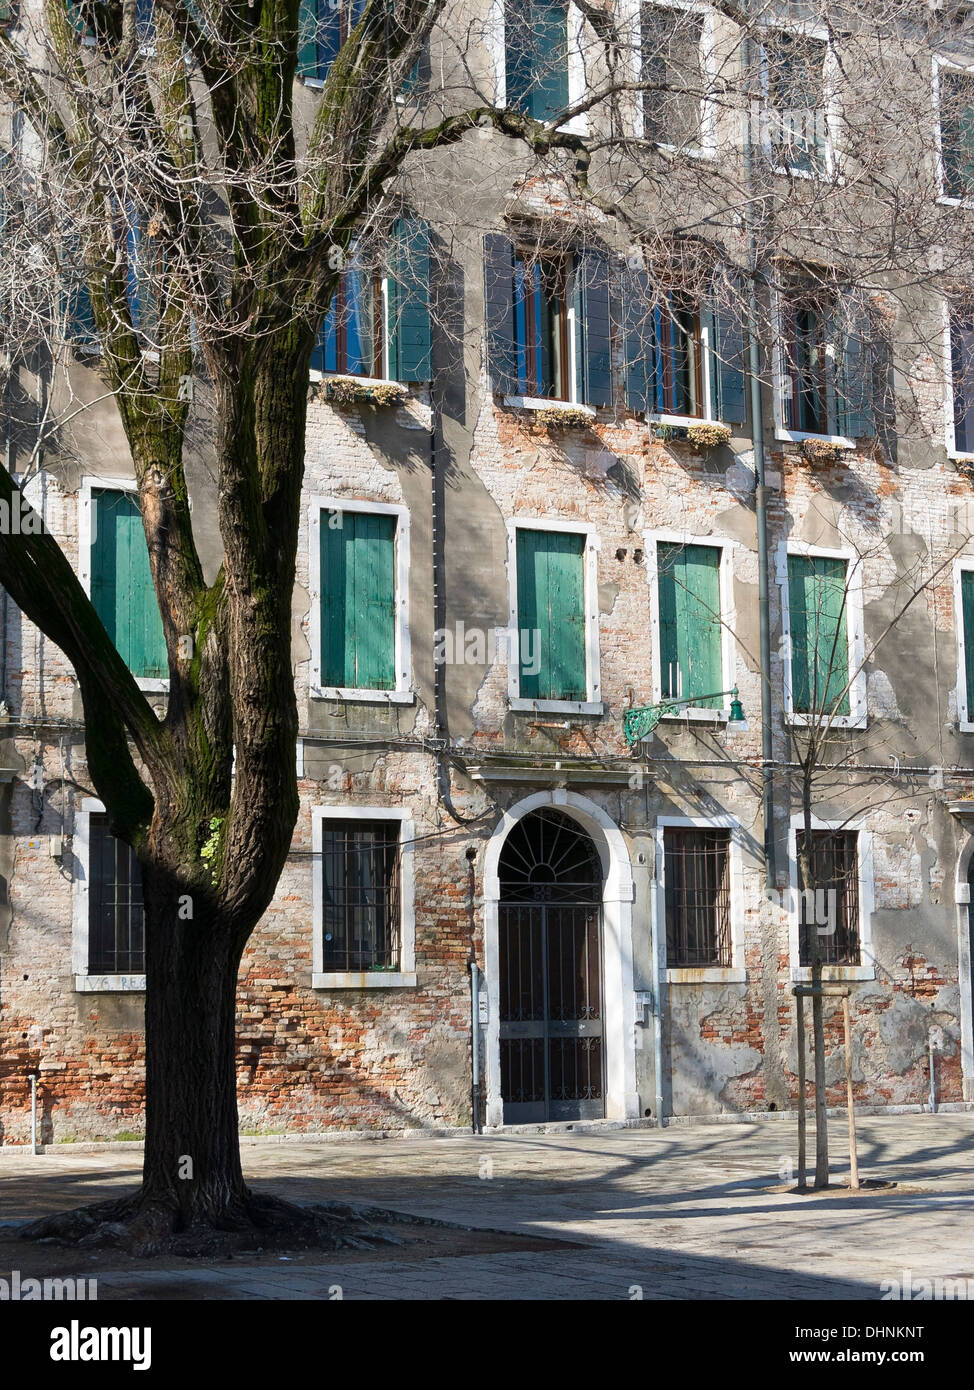 Sunlit avant de old stone building in place pavée avec arbre, Venise, Italie Banque D'Images